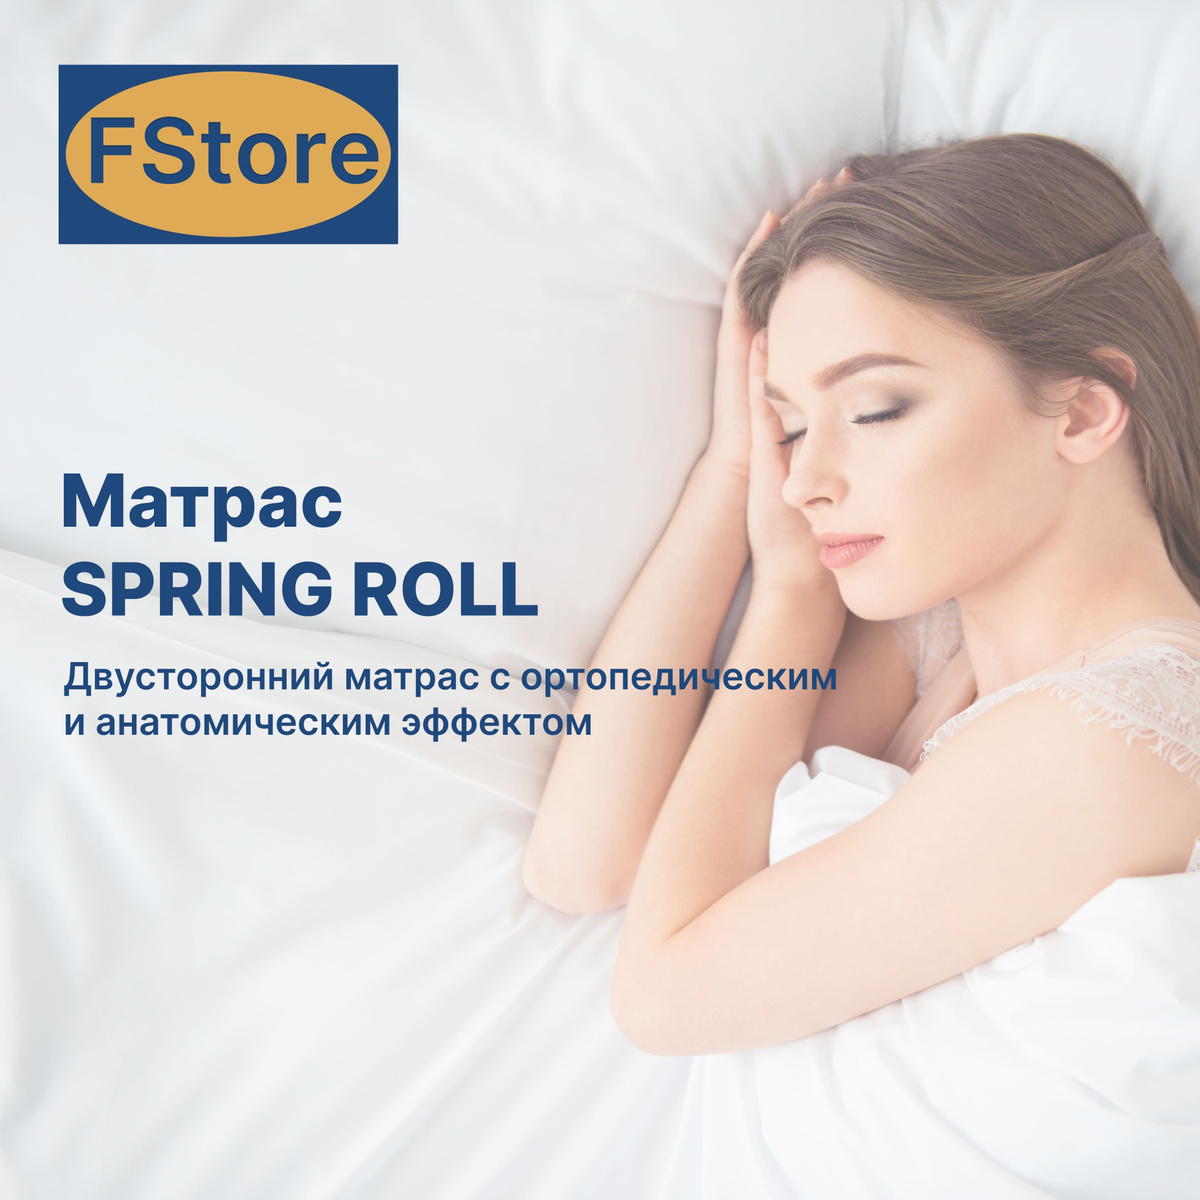 Матрас FStore Spring Roll